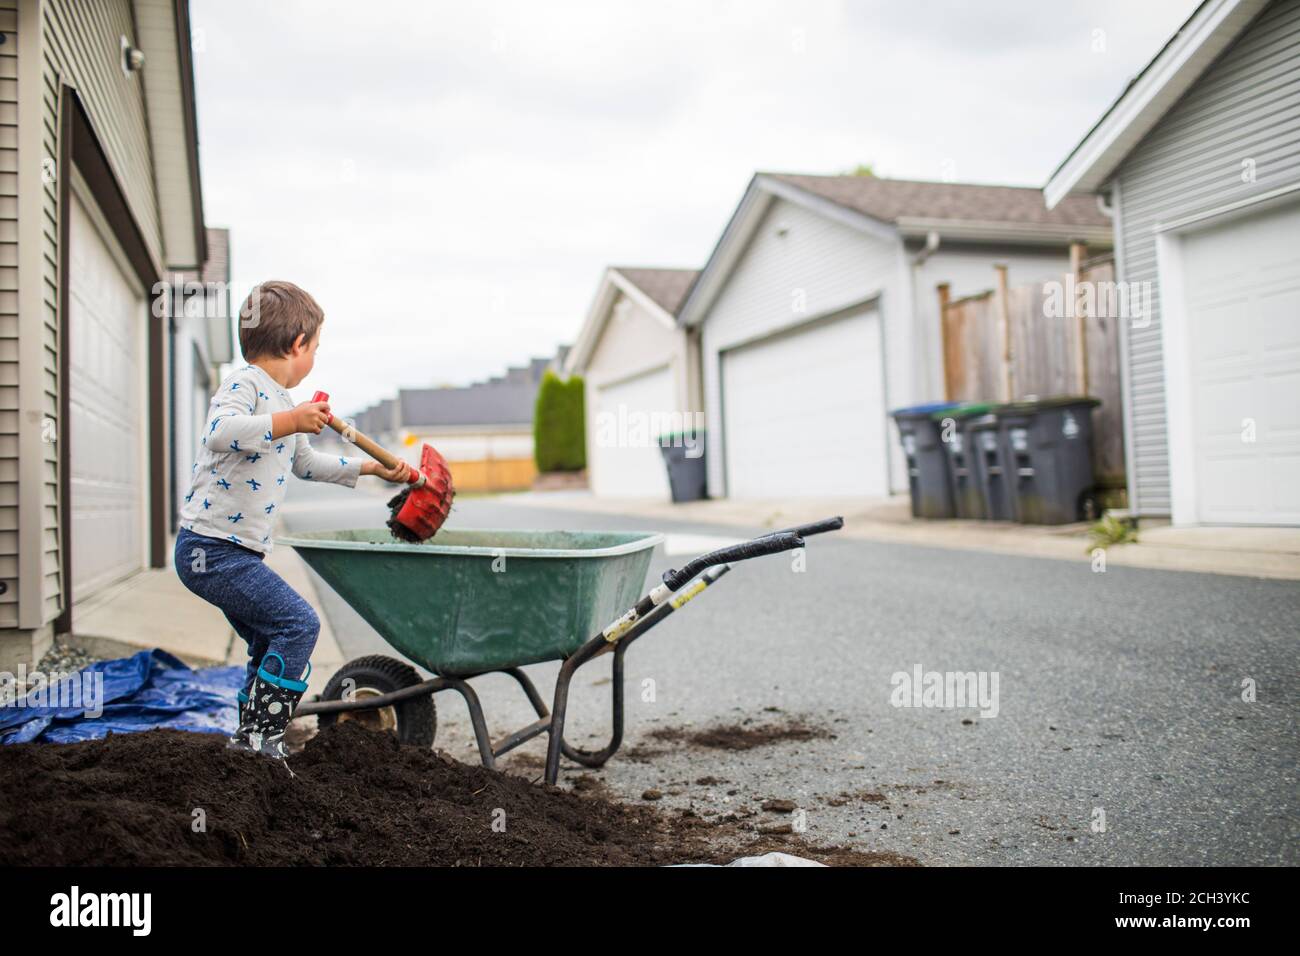 Un jeune garçon ramasse une pile de terre dans une brouette à l'arrière allée Banque D'Images